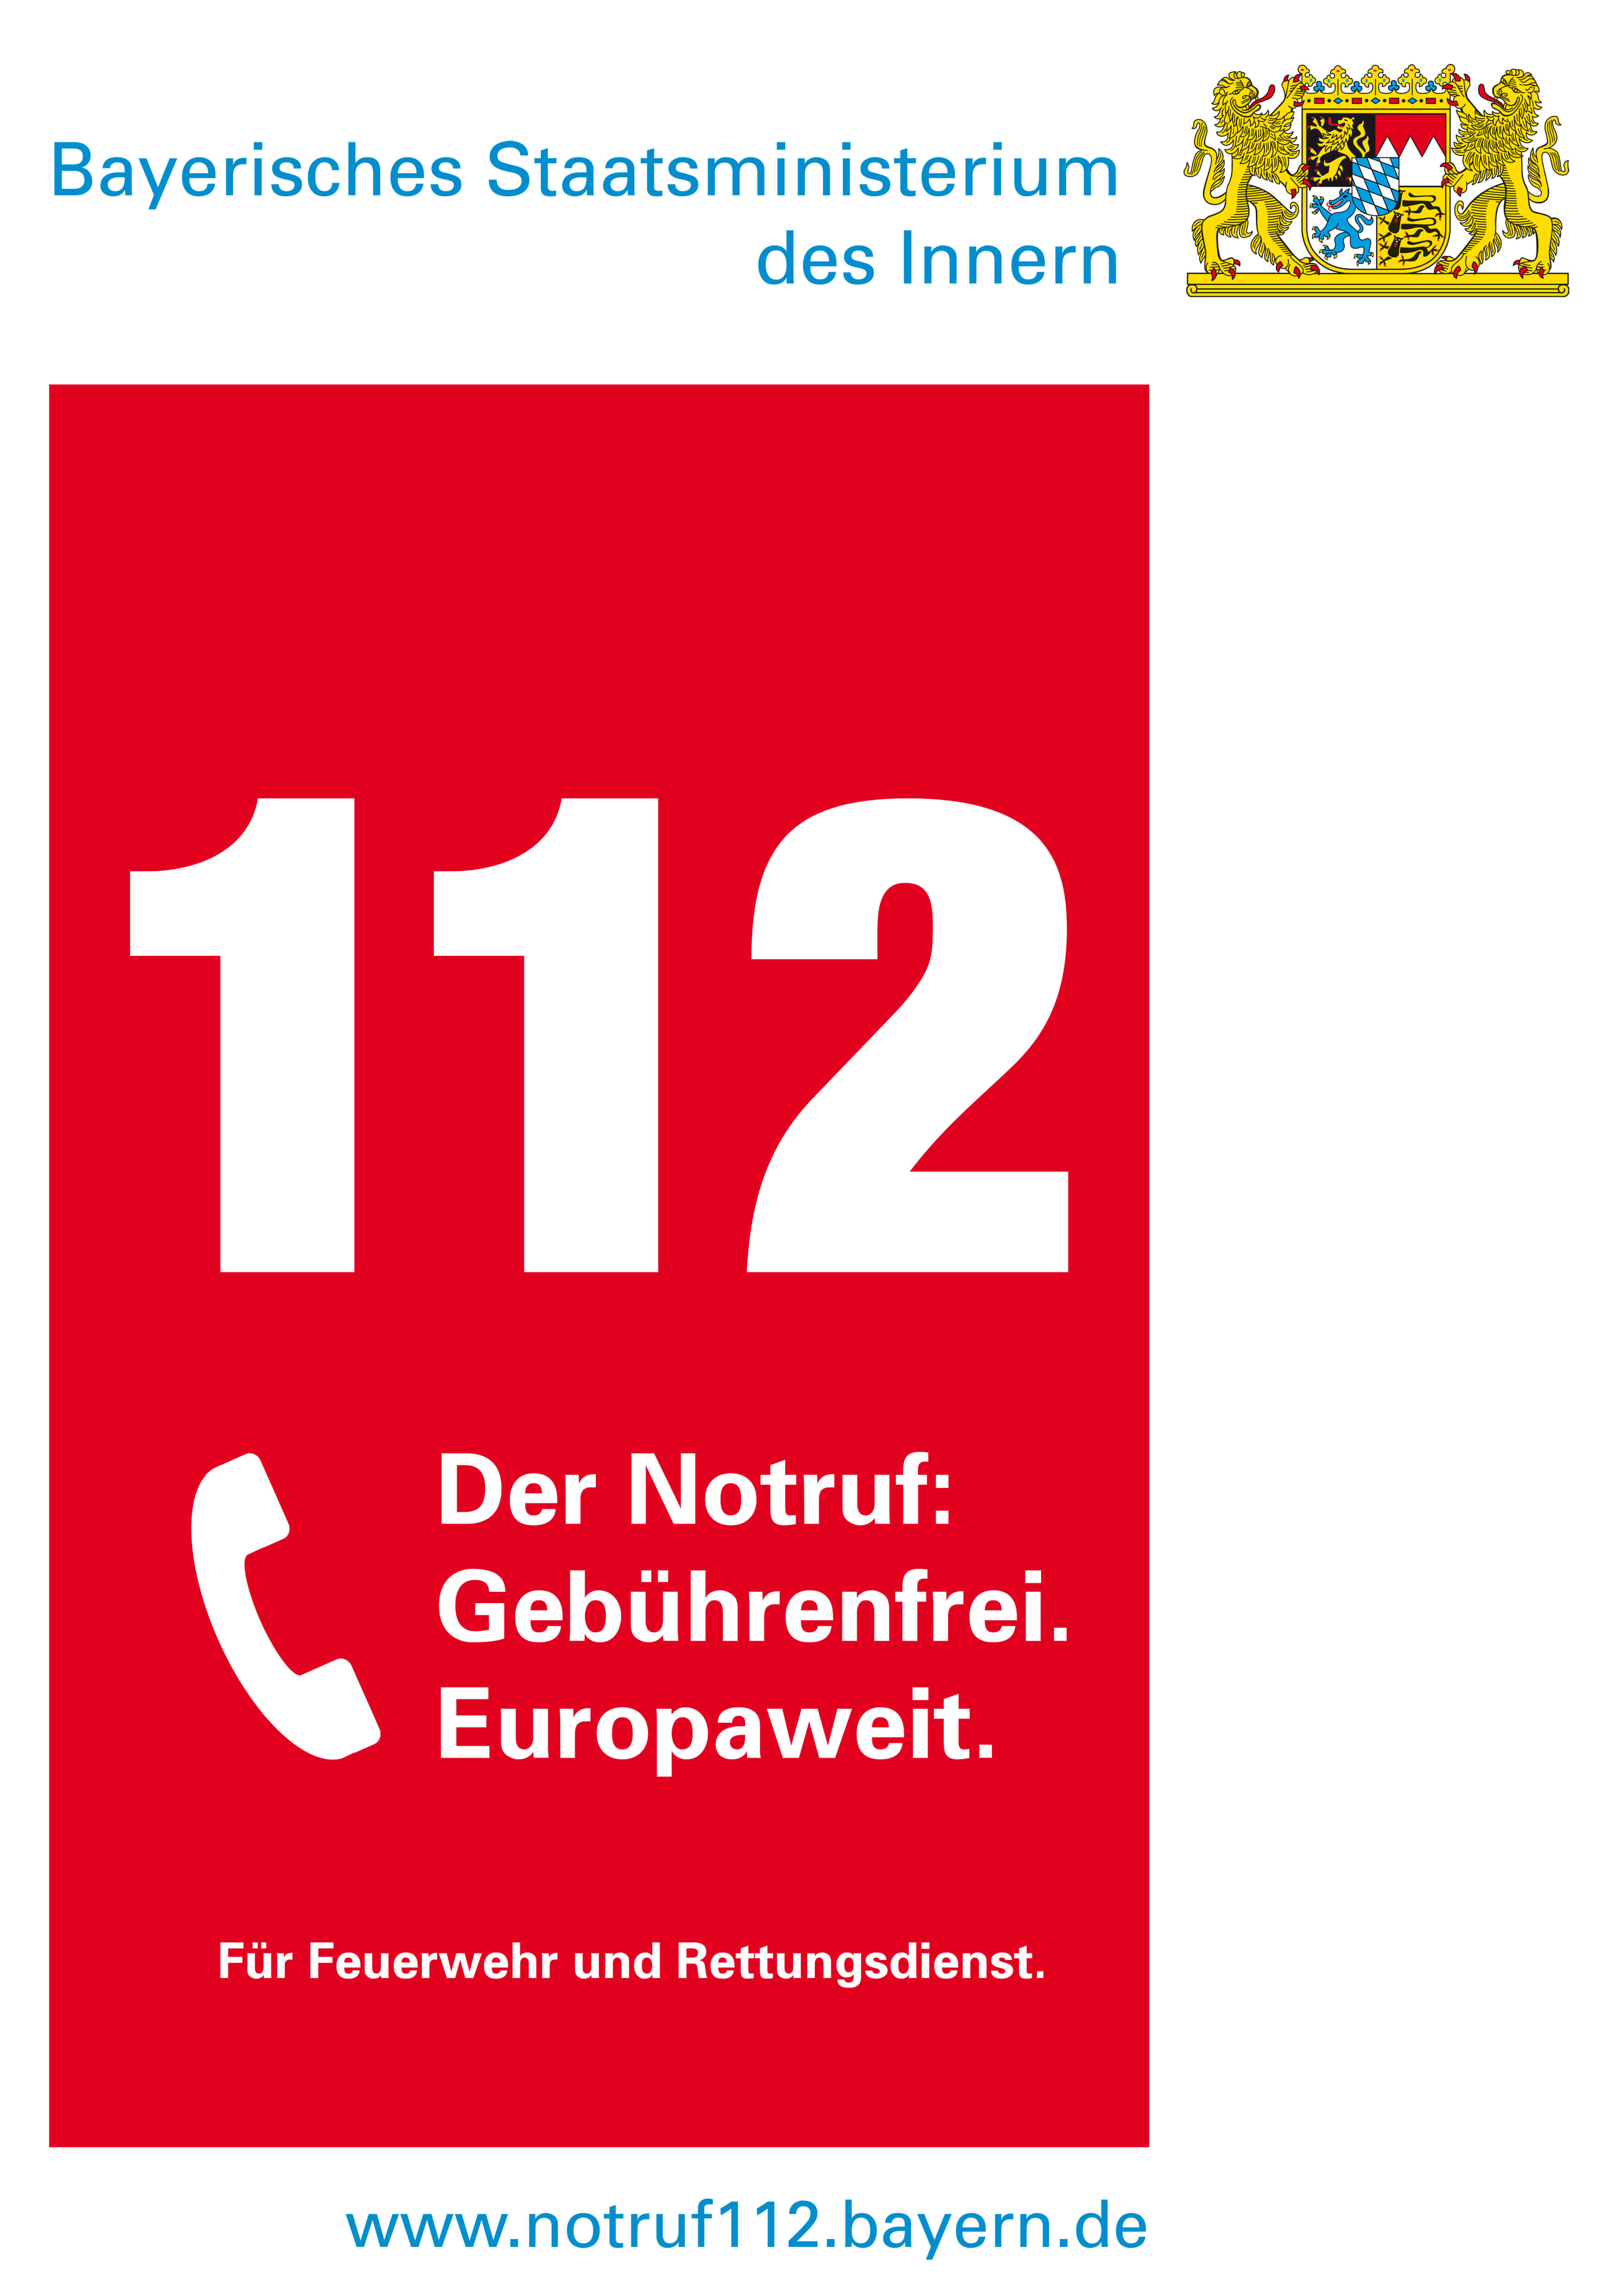 Für Notrufe Telefon 112